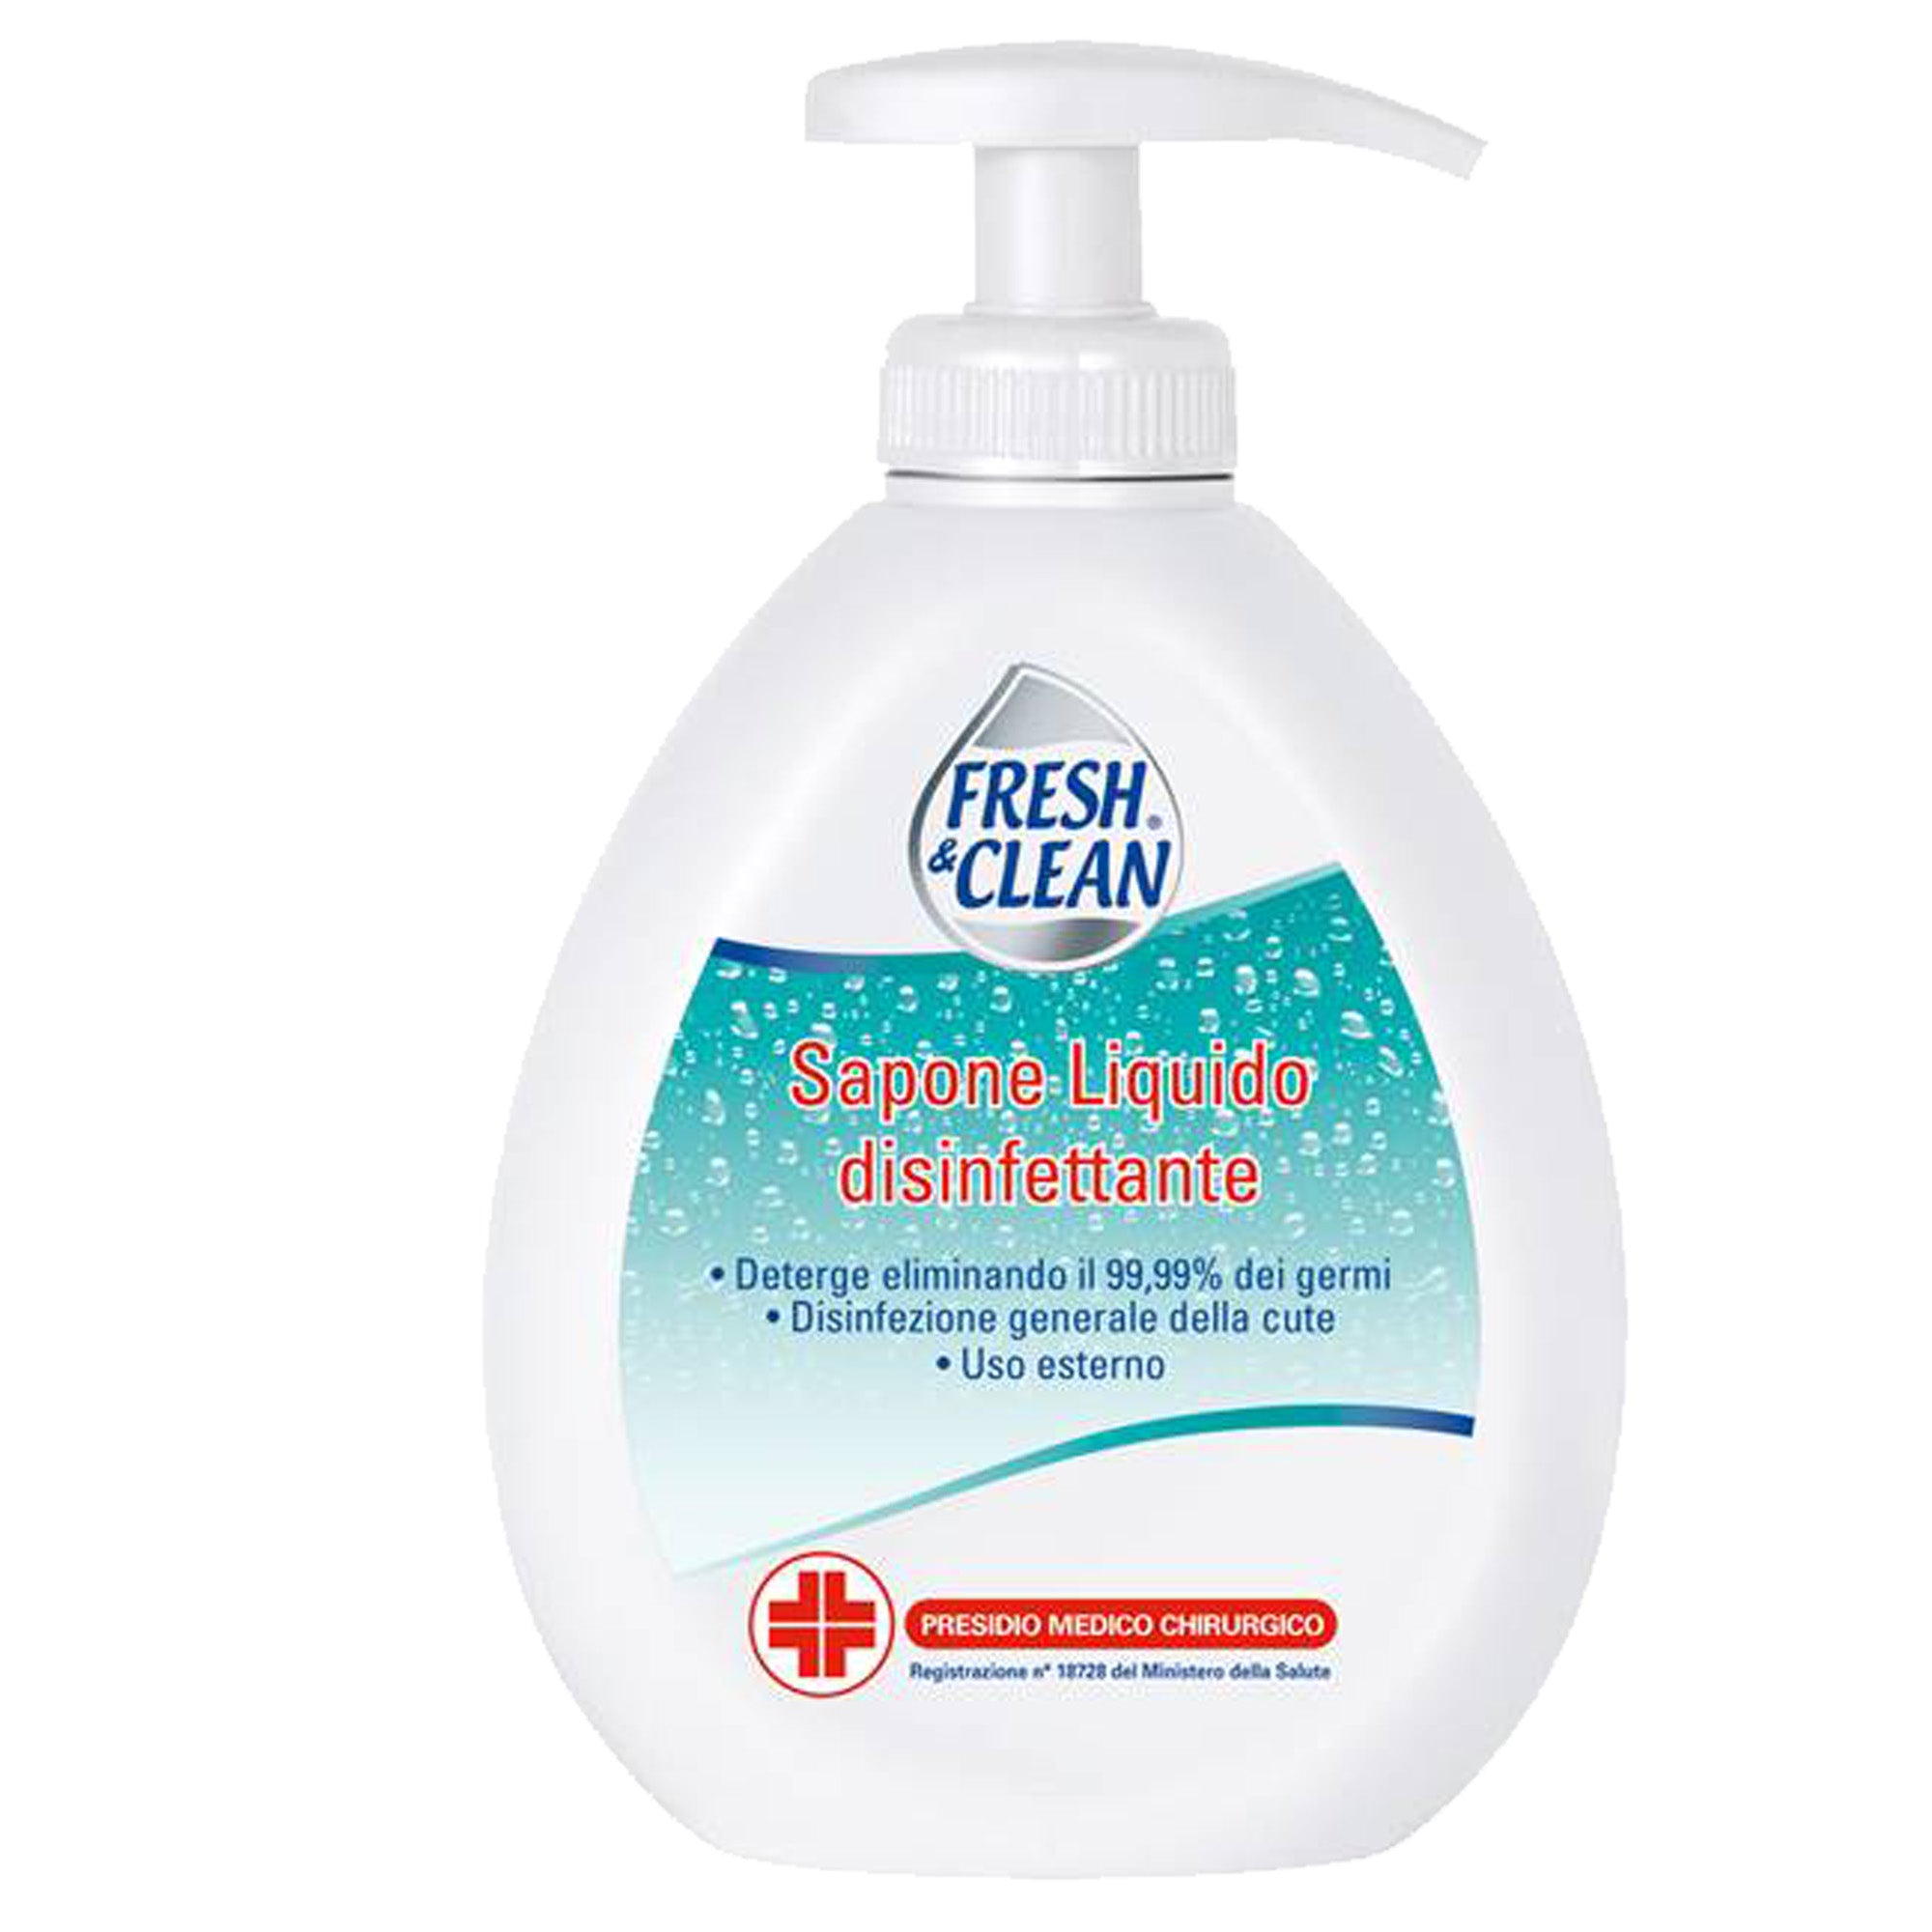 fresh&clean-sapone-liquido-disinfettante-freshclean-300ml